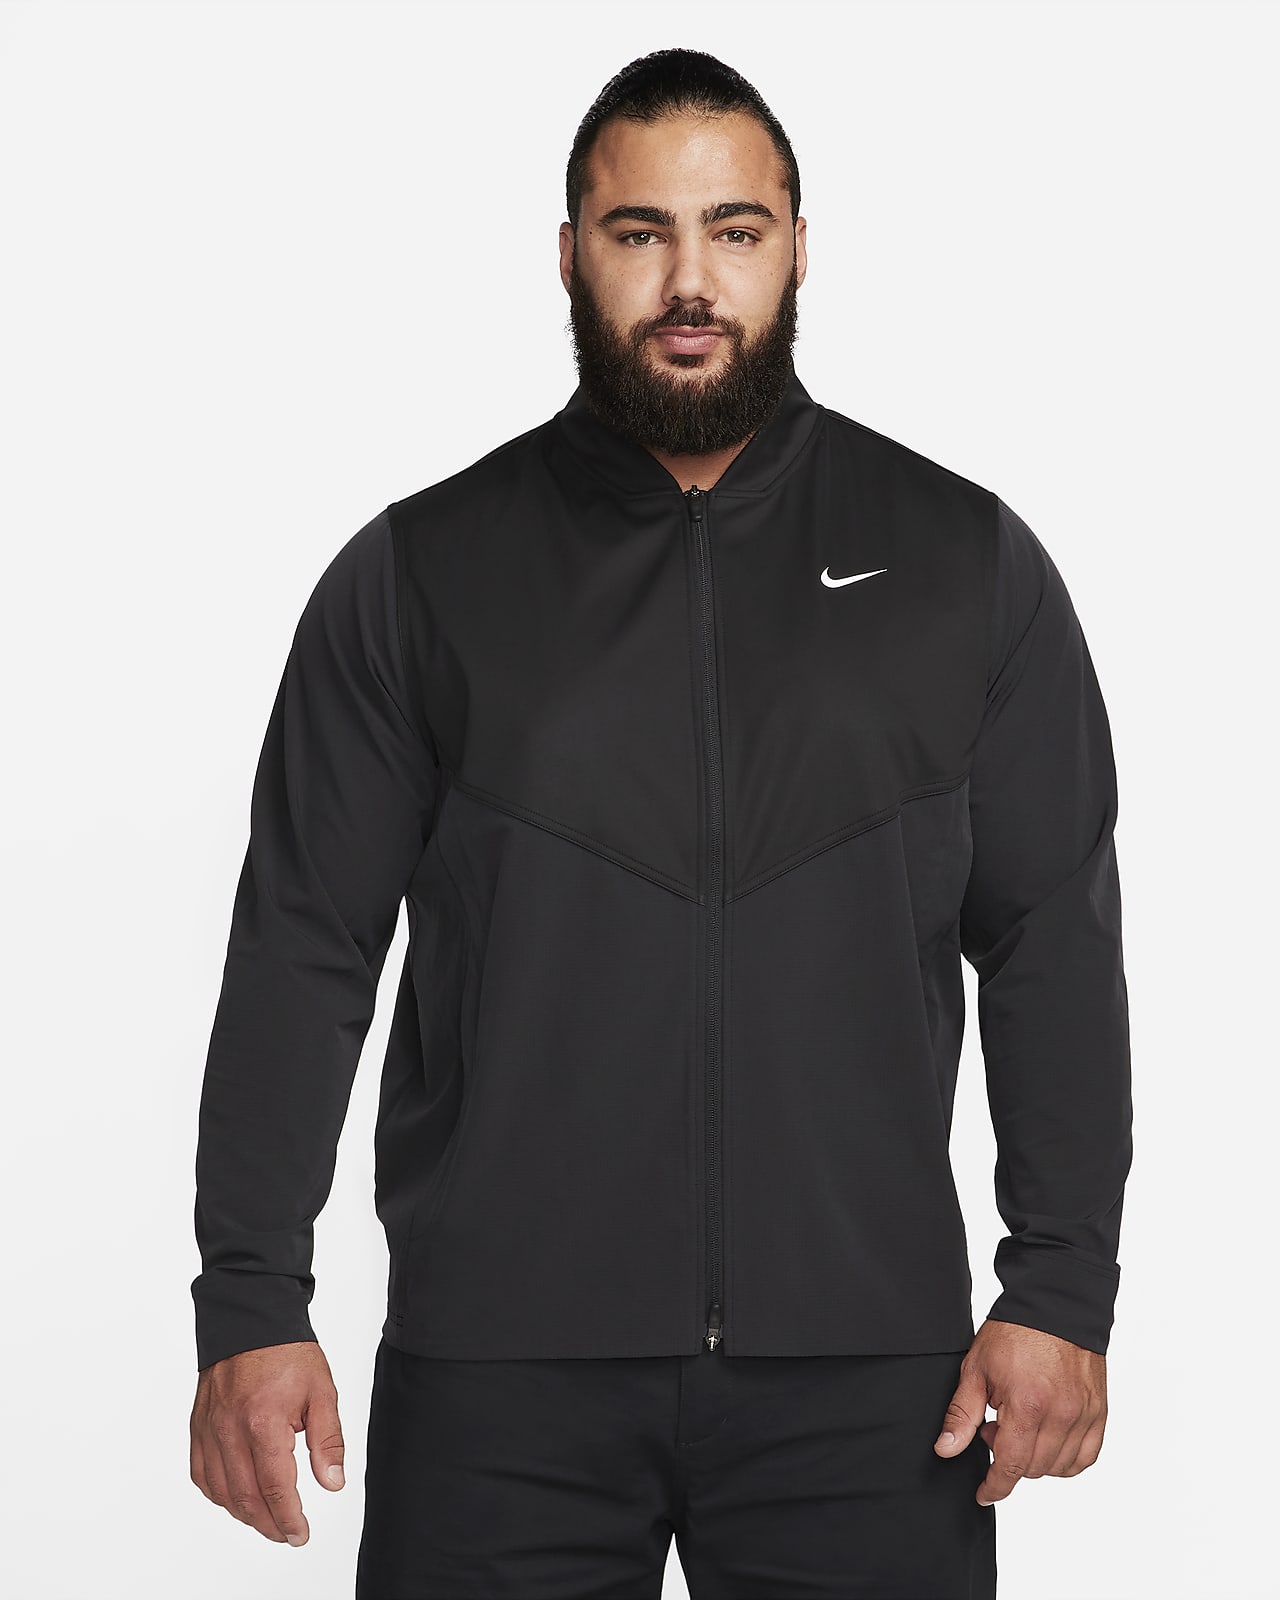 Afkeer haag Verbeteren Nike Tour Essential Men's Golf Jacket. Nike LU